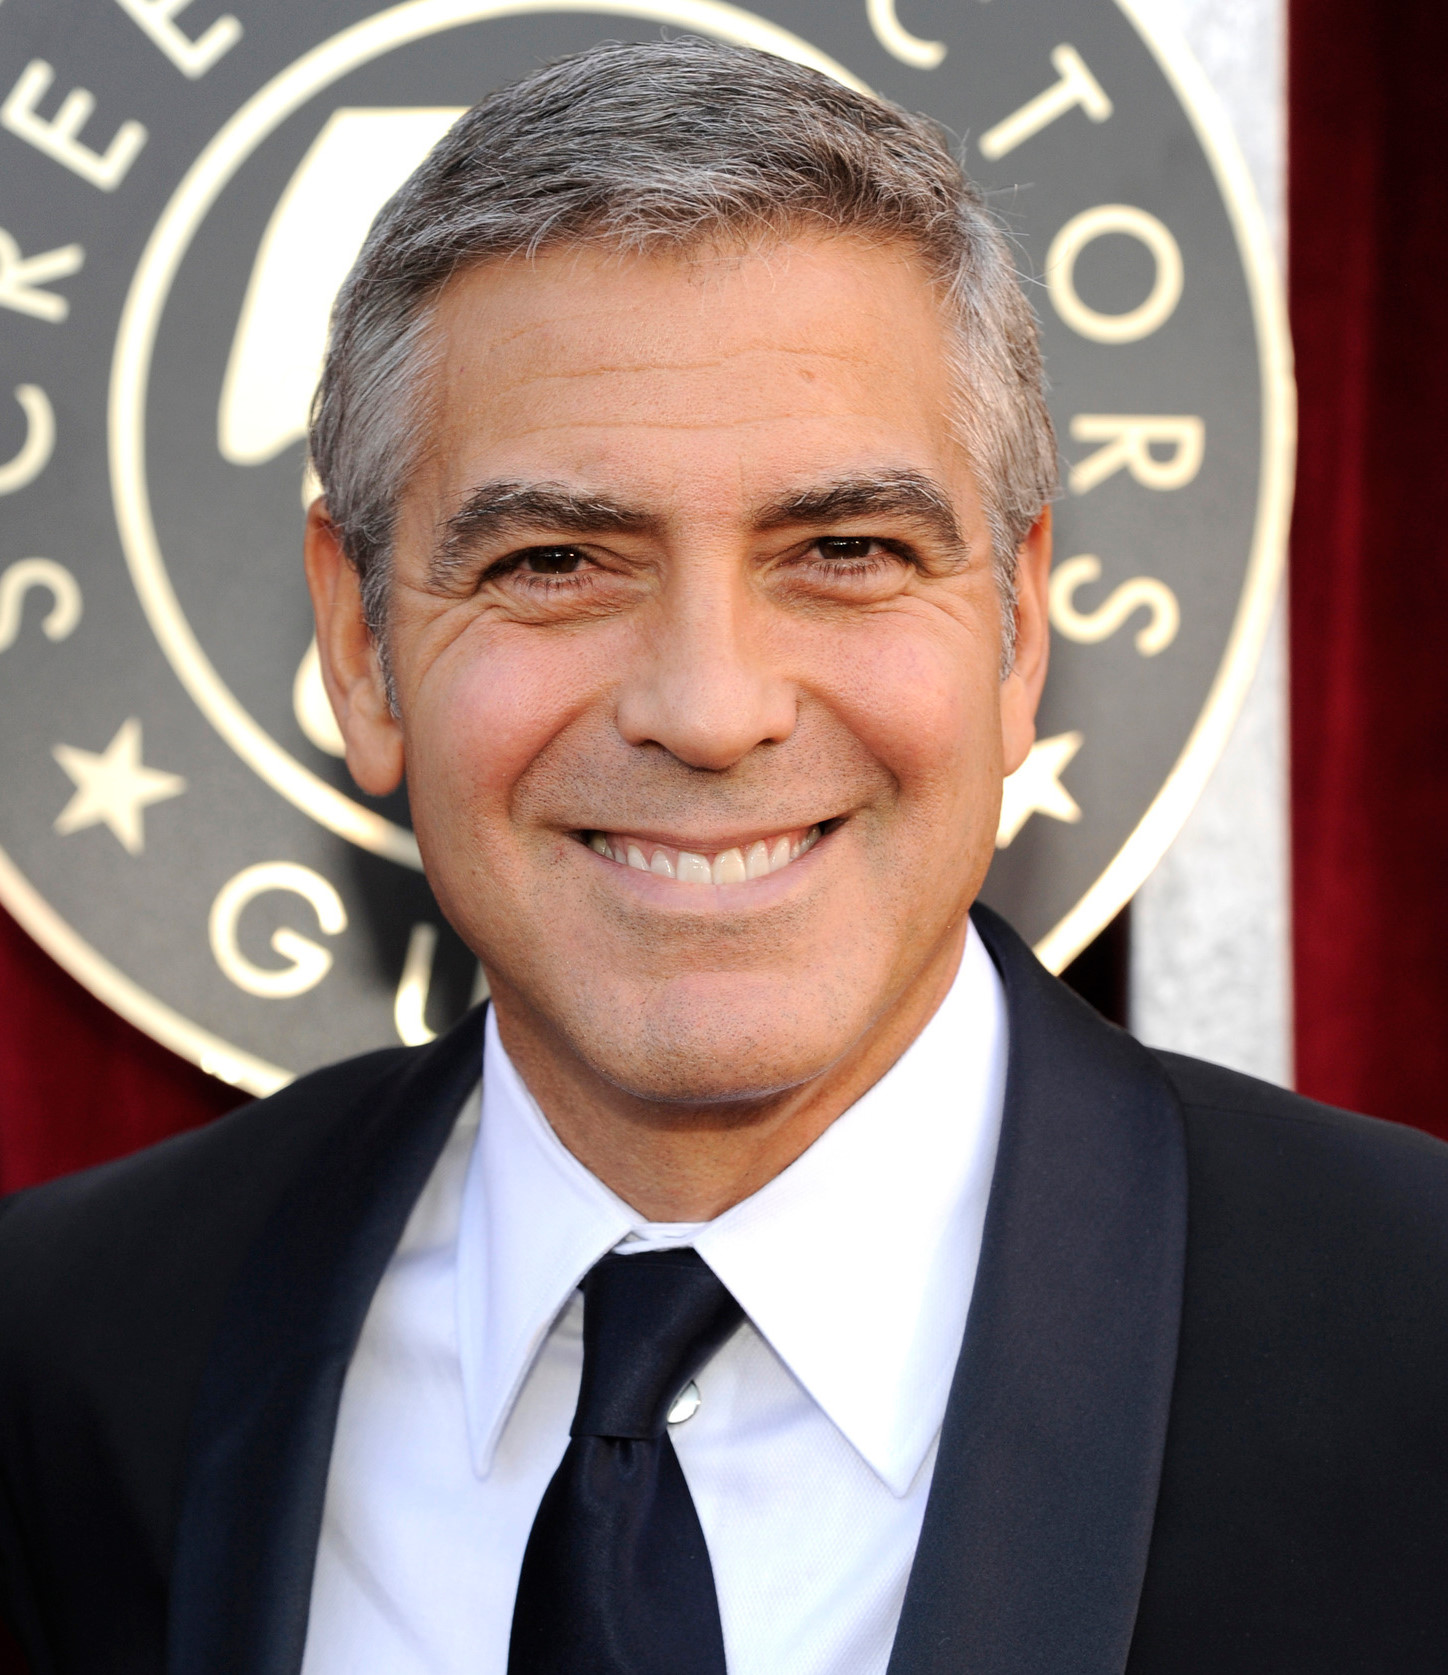 George Clooney, arkadaşını savundu ve Meghan'ın rahat bırakılmasını istedi.